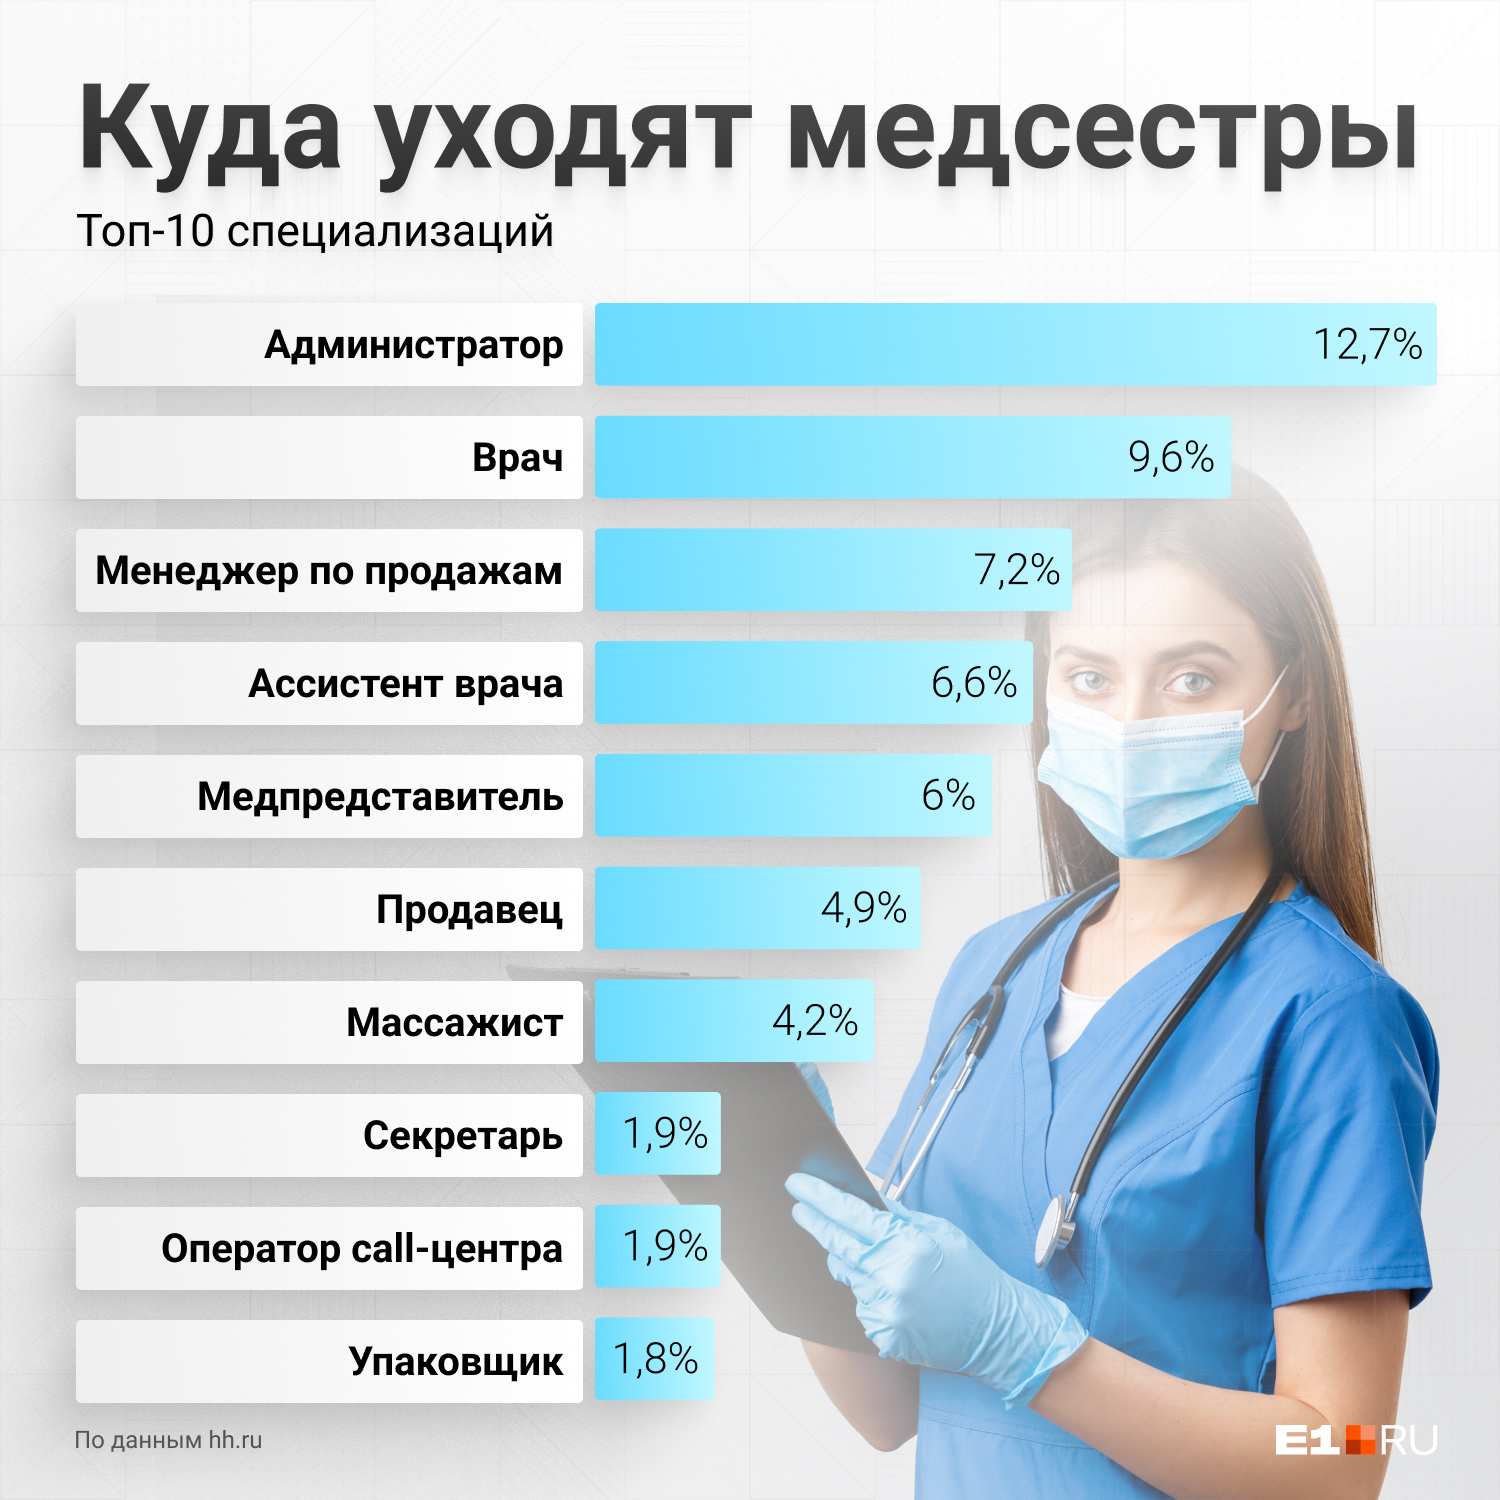 Еще 54% медсестер ищут работу в той же должности